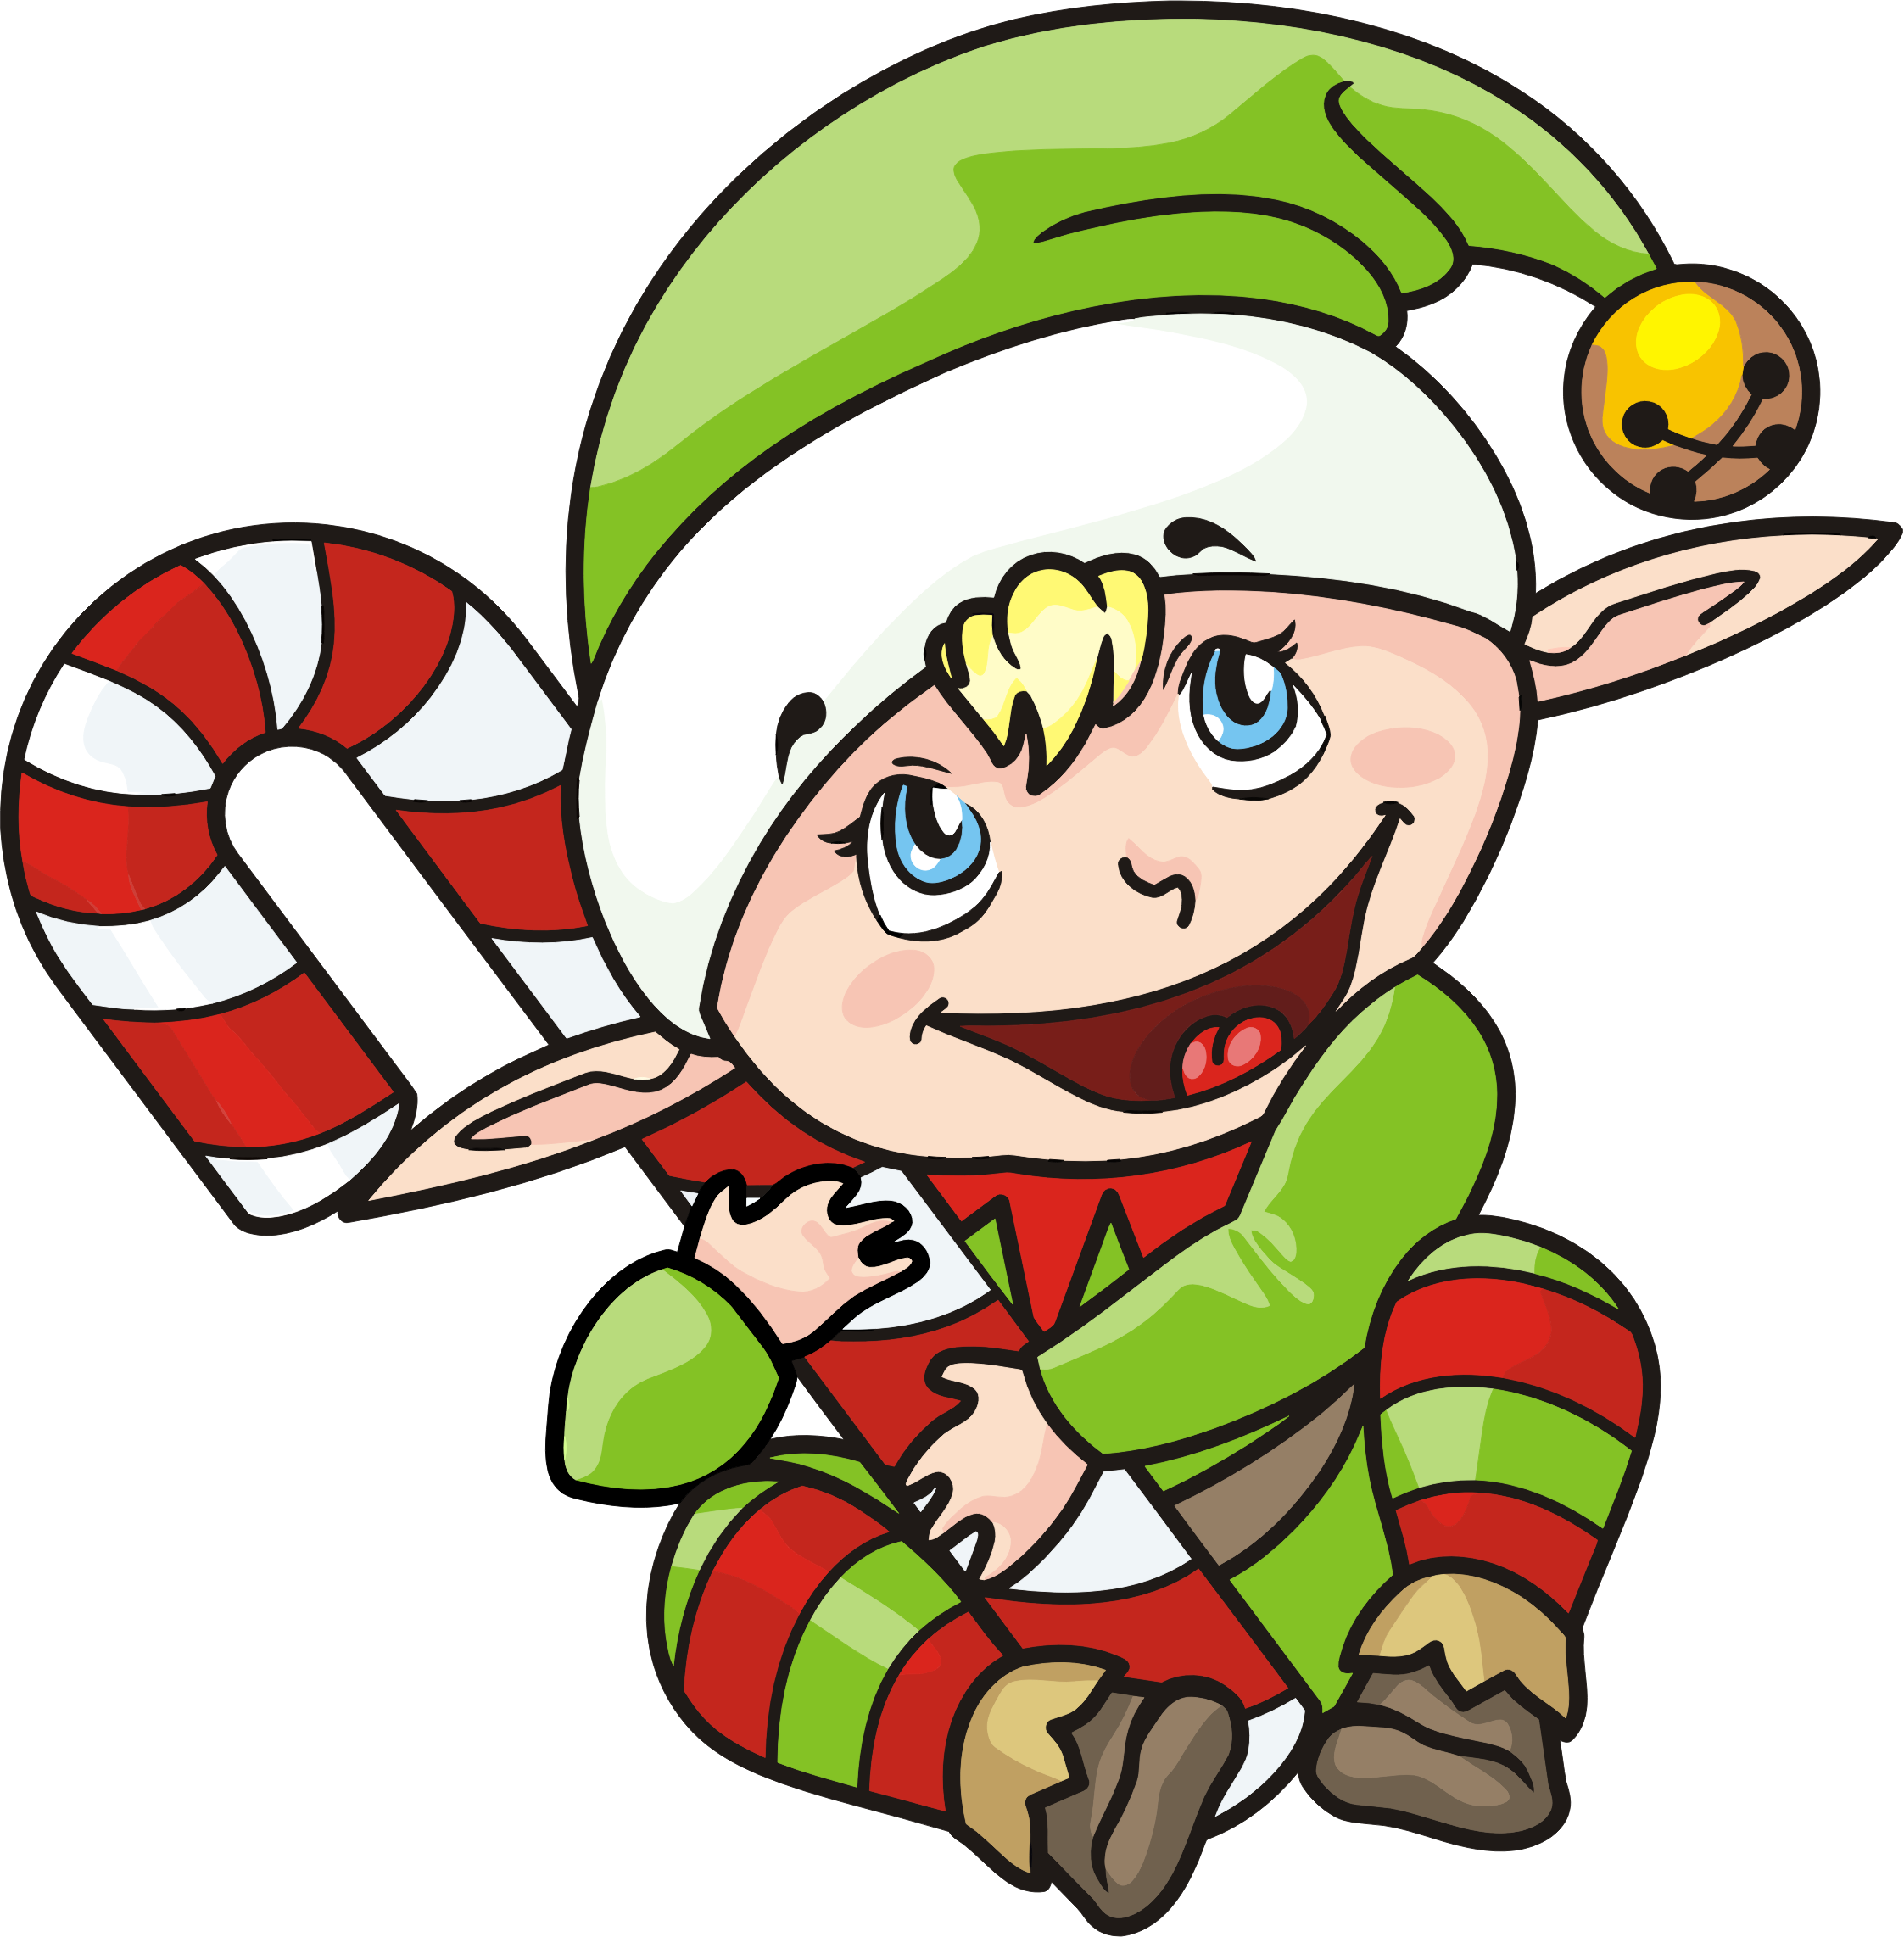 Big Image - Christmas Elf (2245x2284)